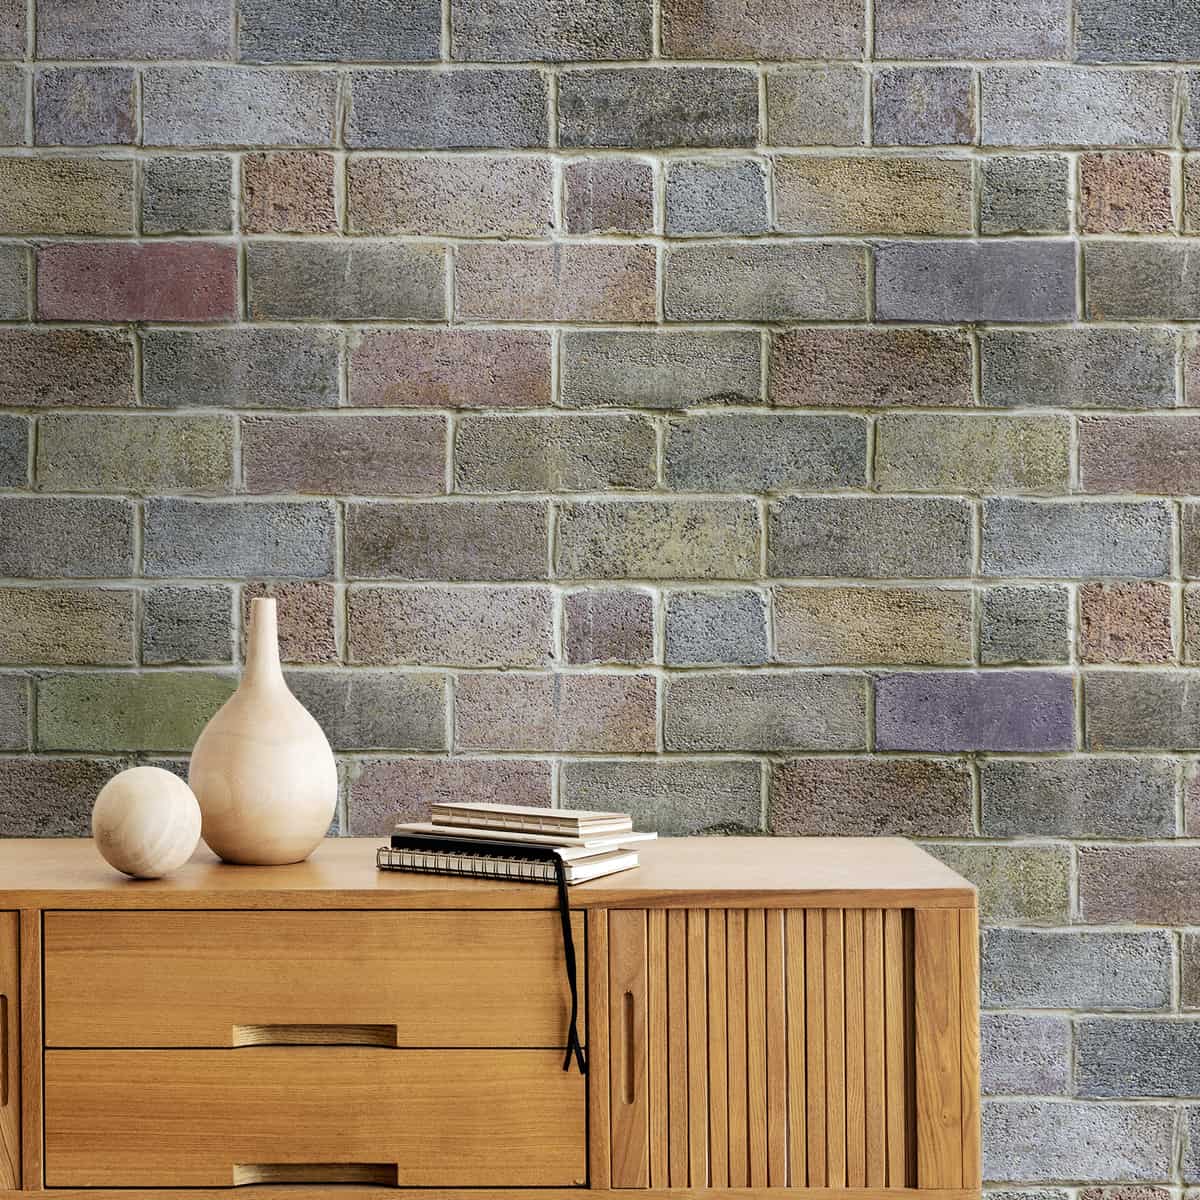 3D Natural Brick Look Wallpaper for Walls